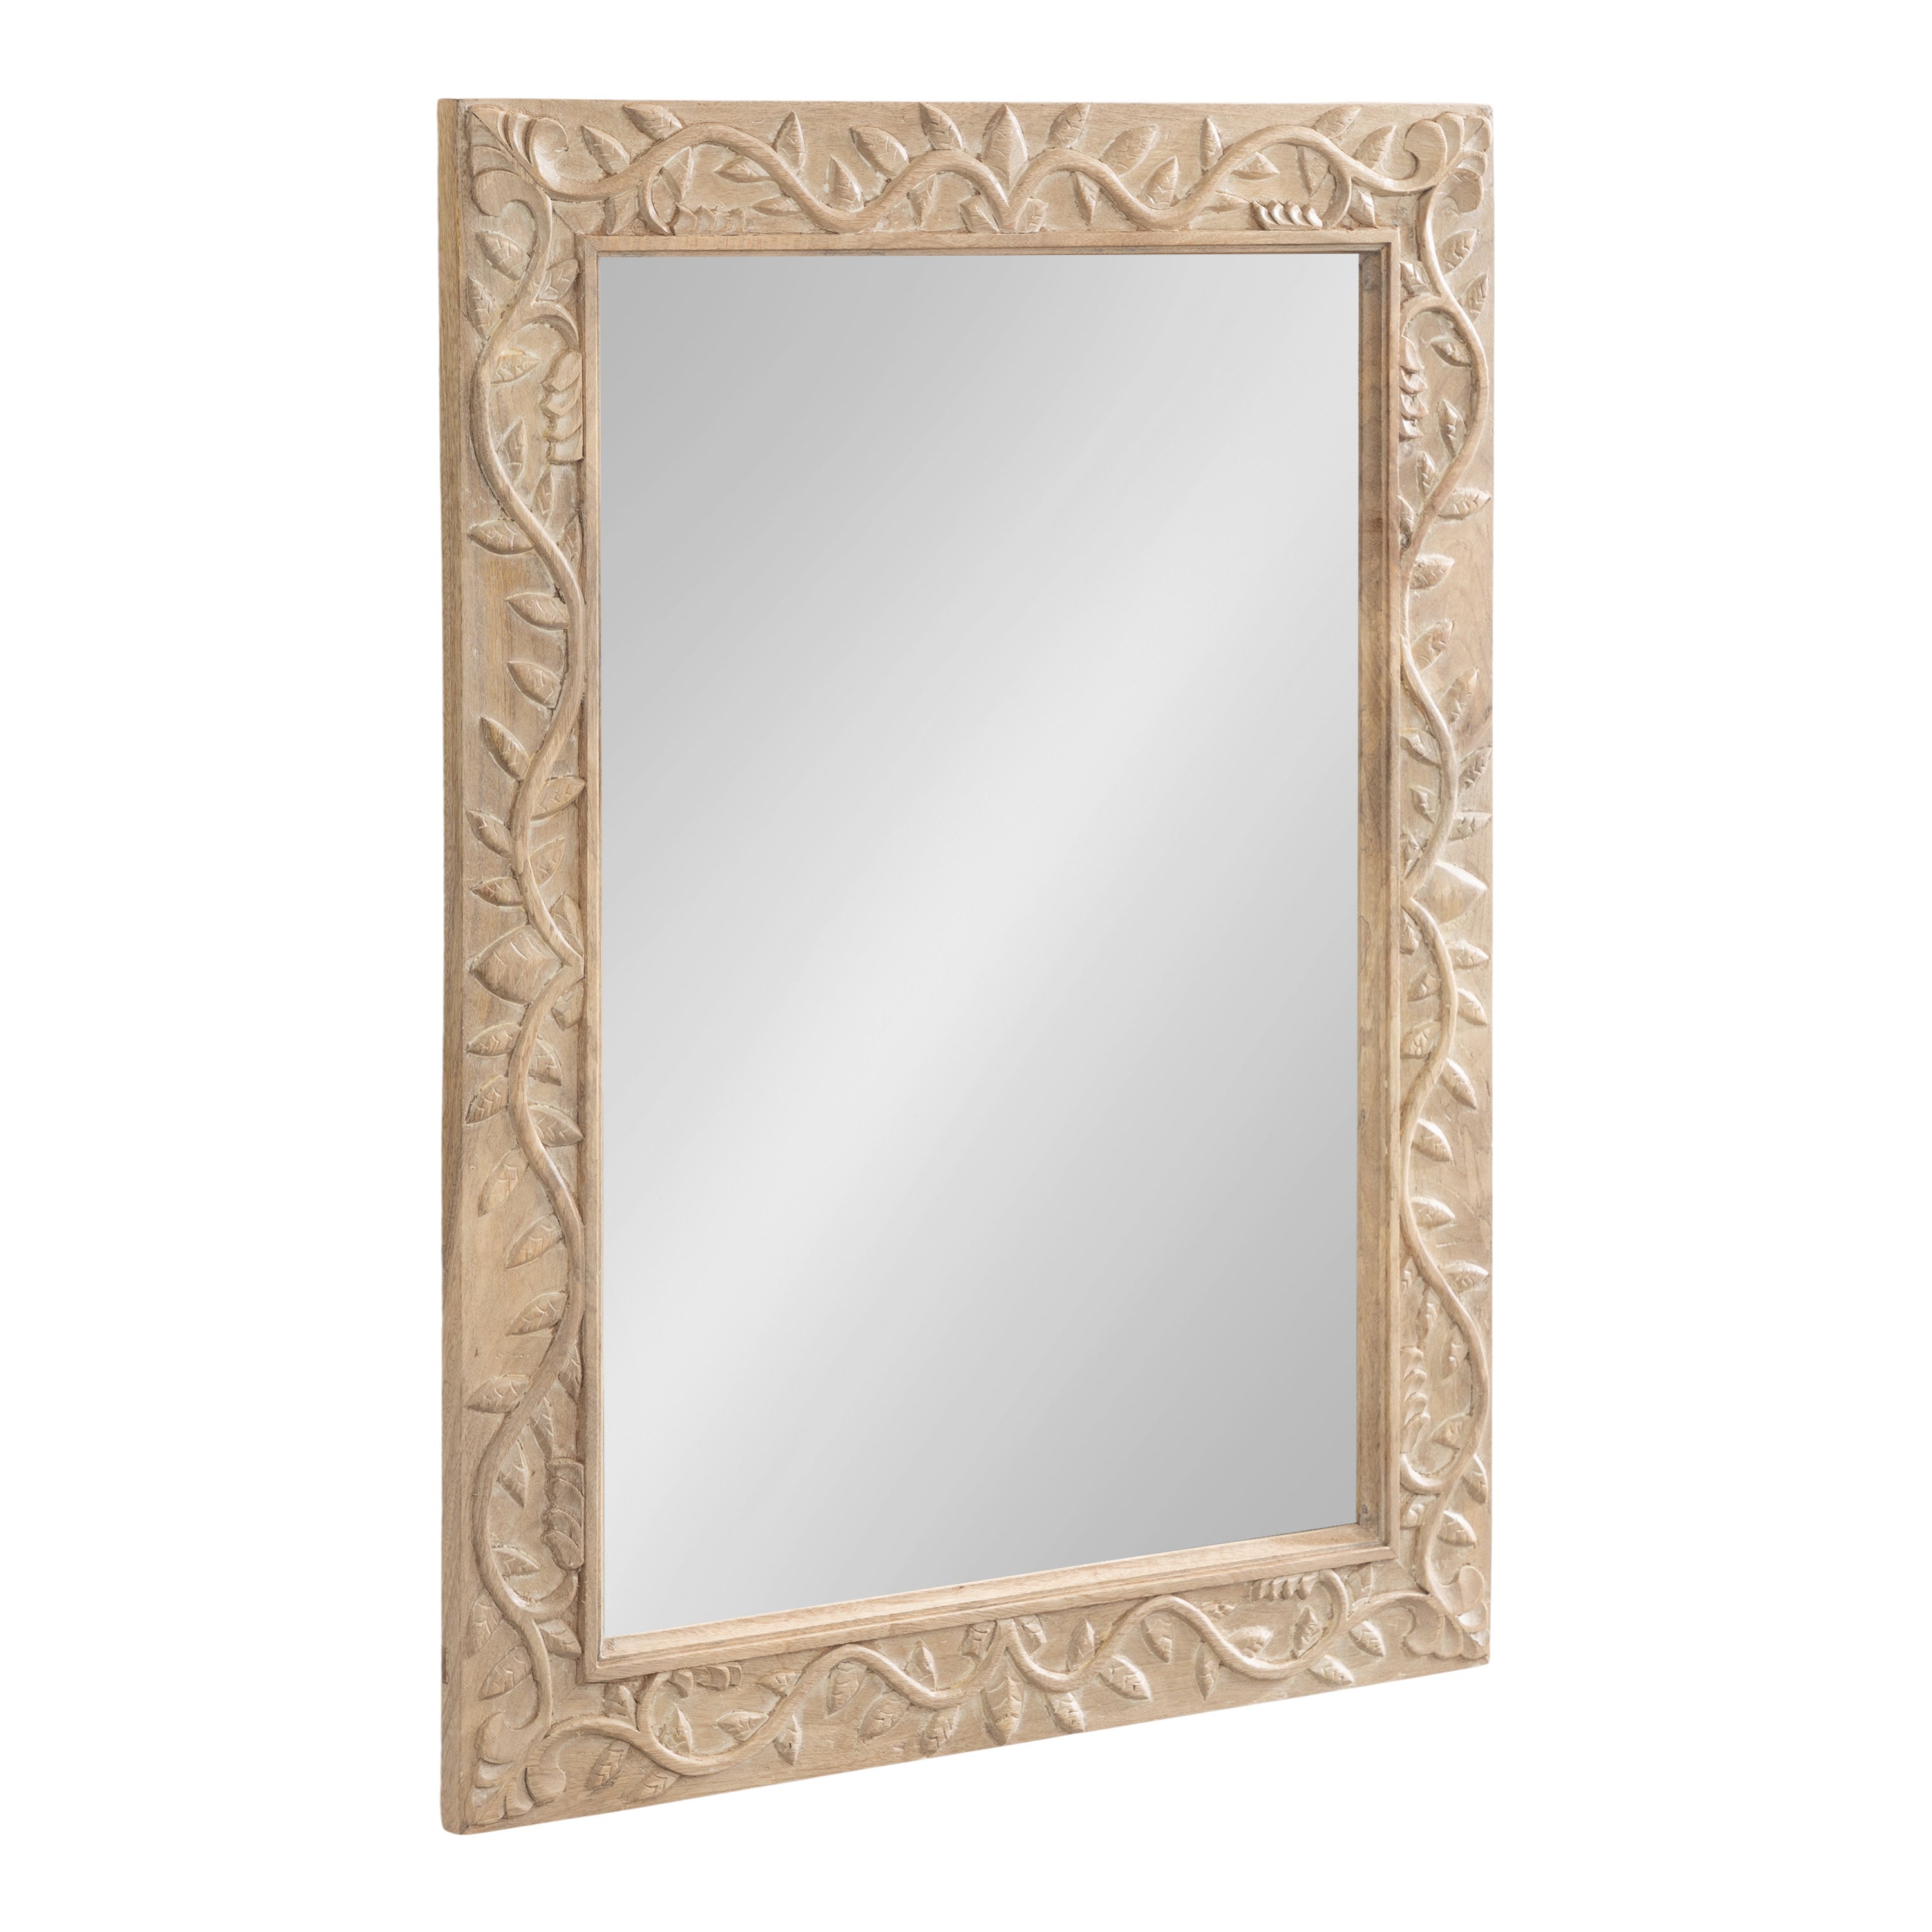 Natesa Carved Wood Mirror